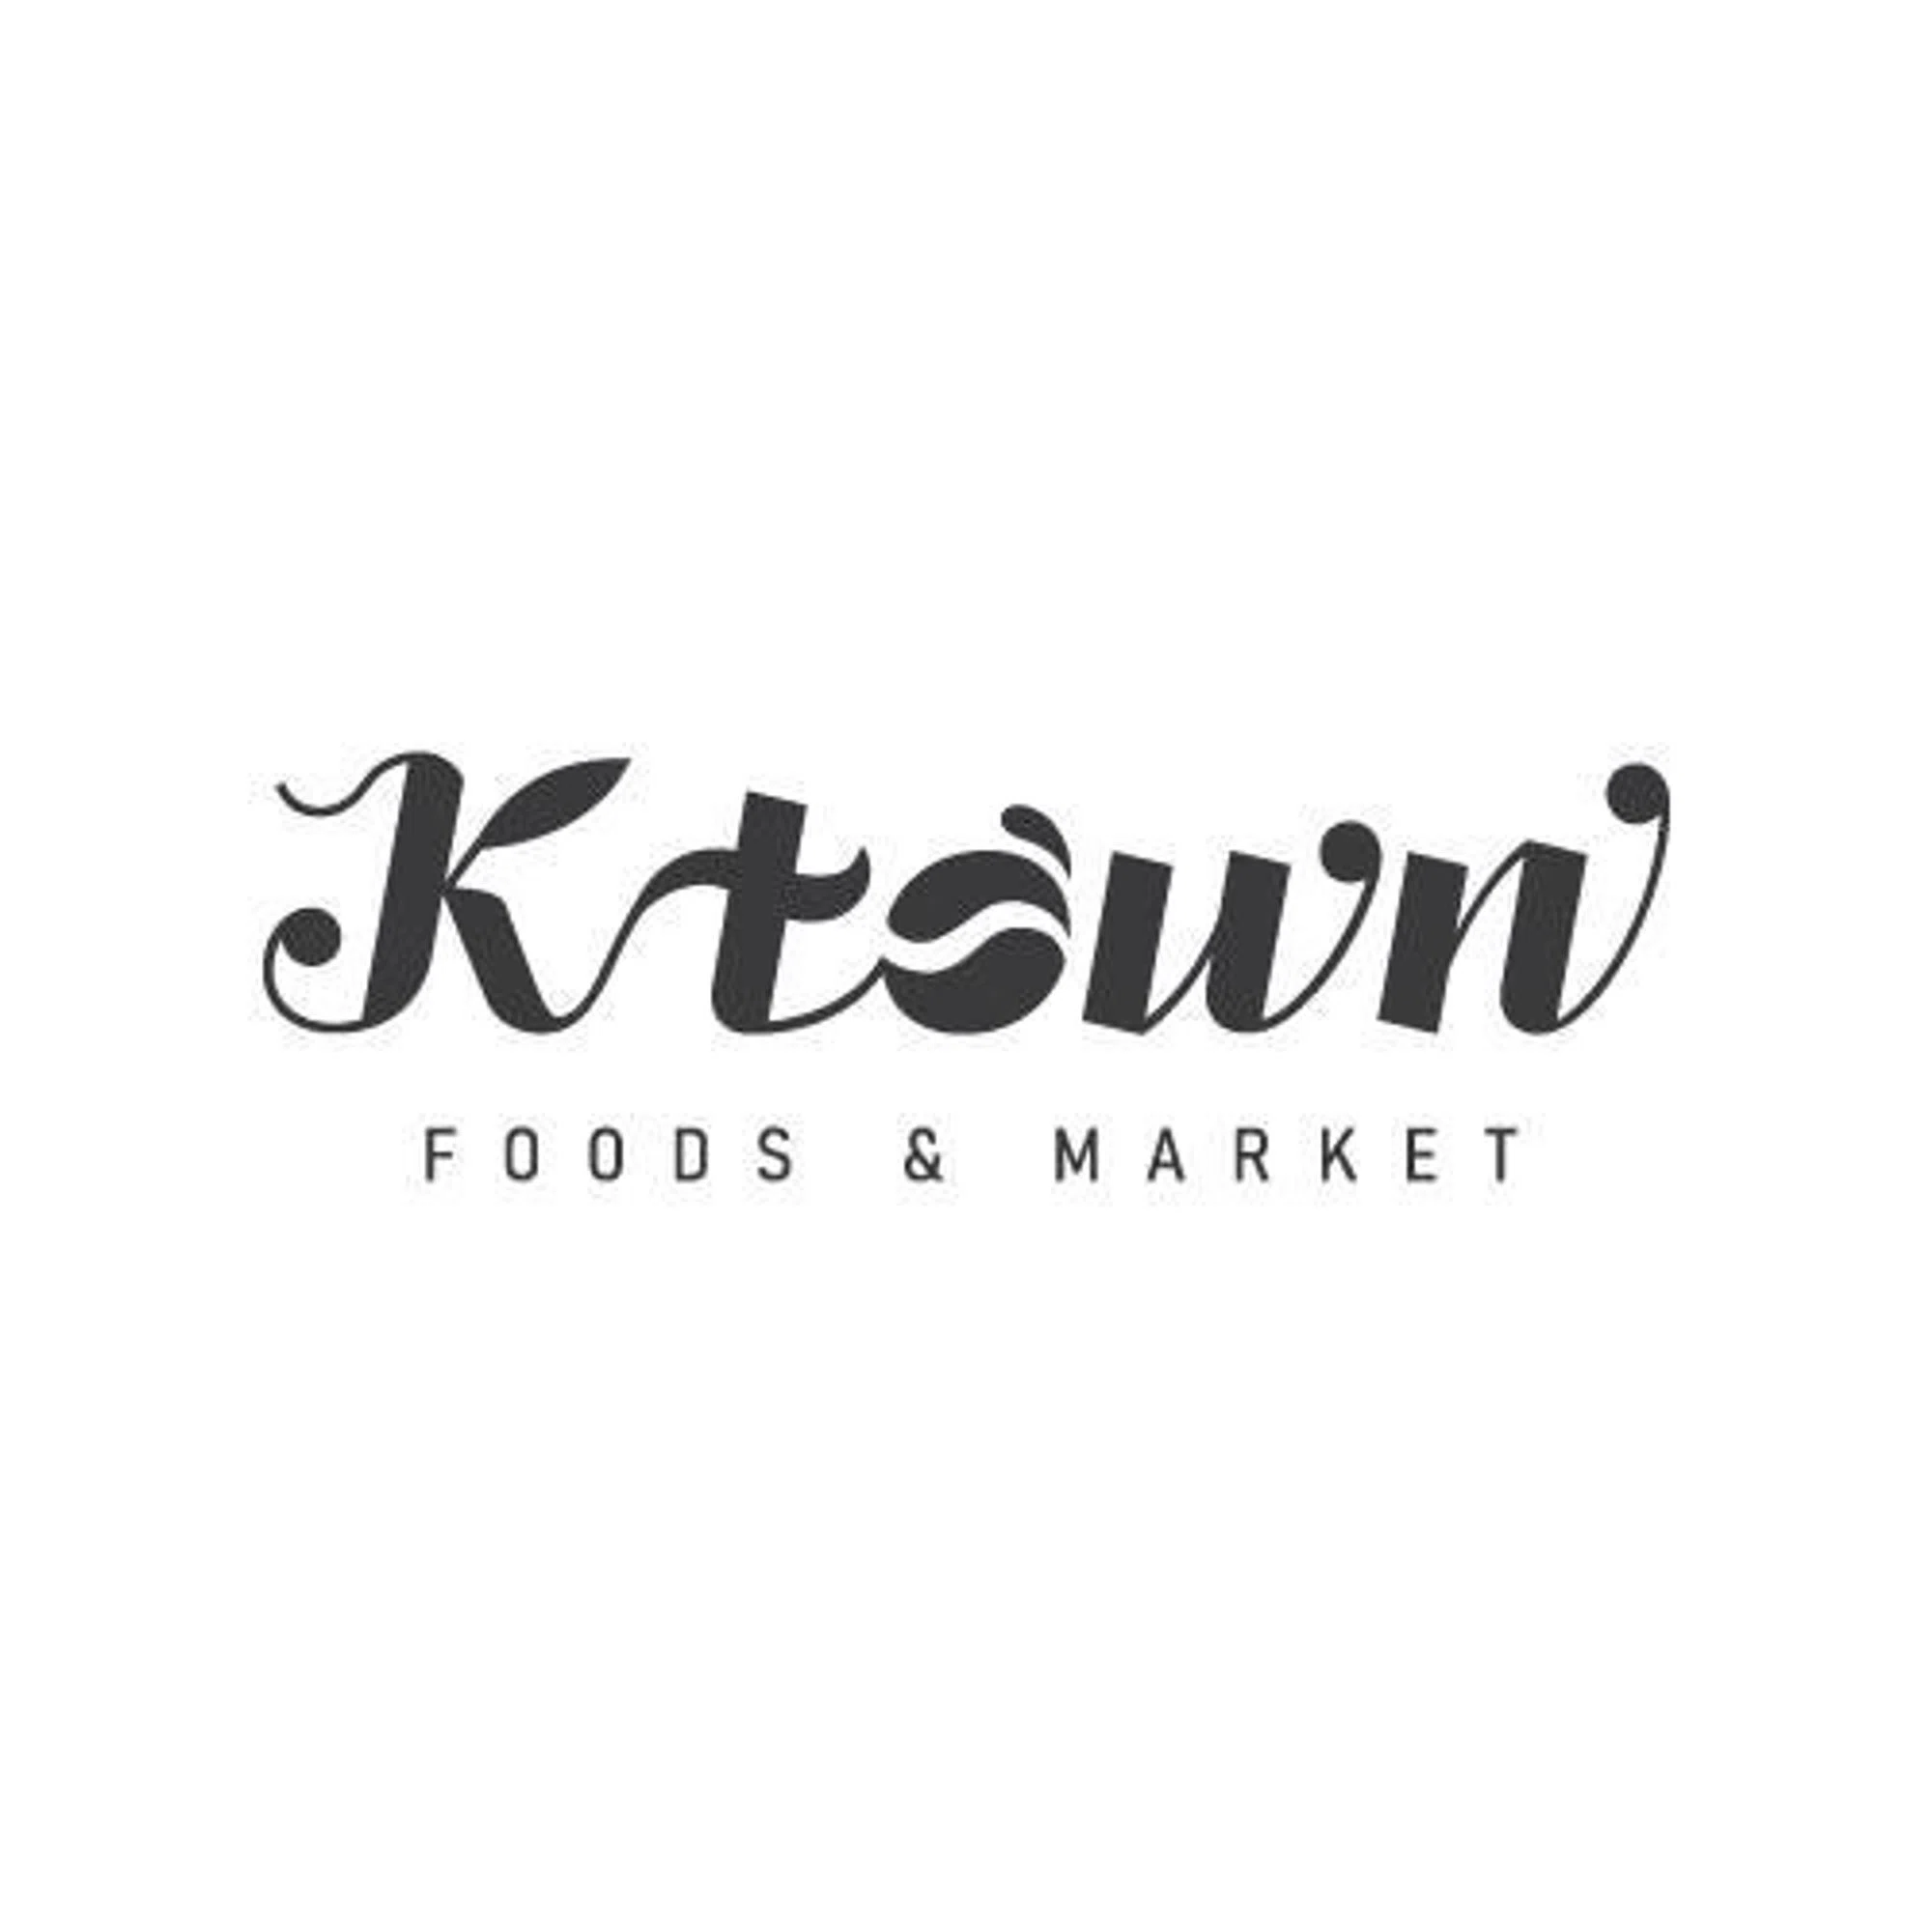 Ktown Market